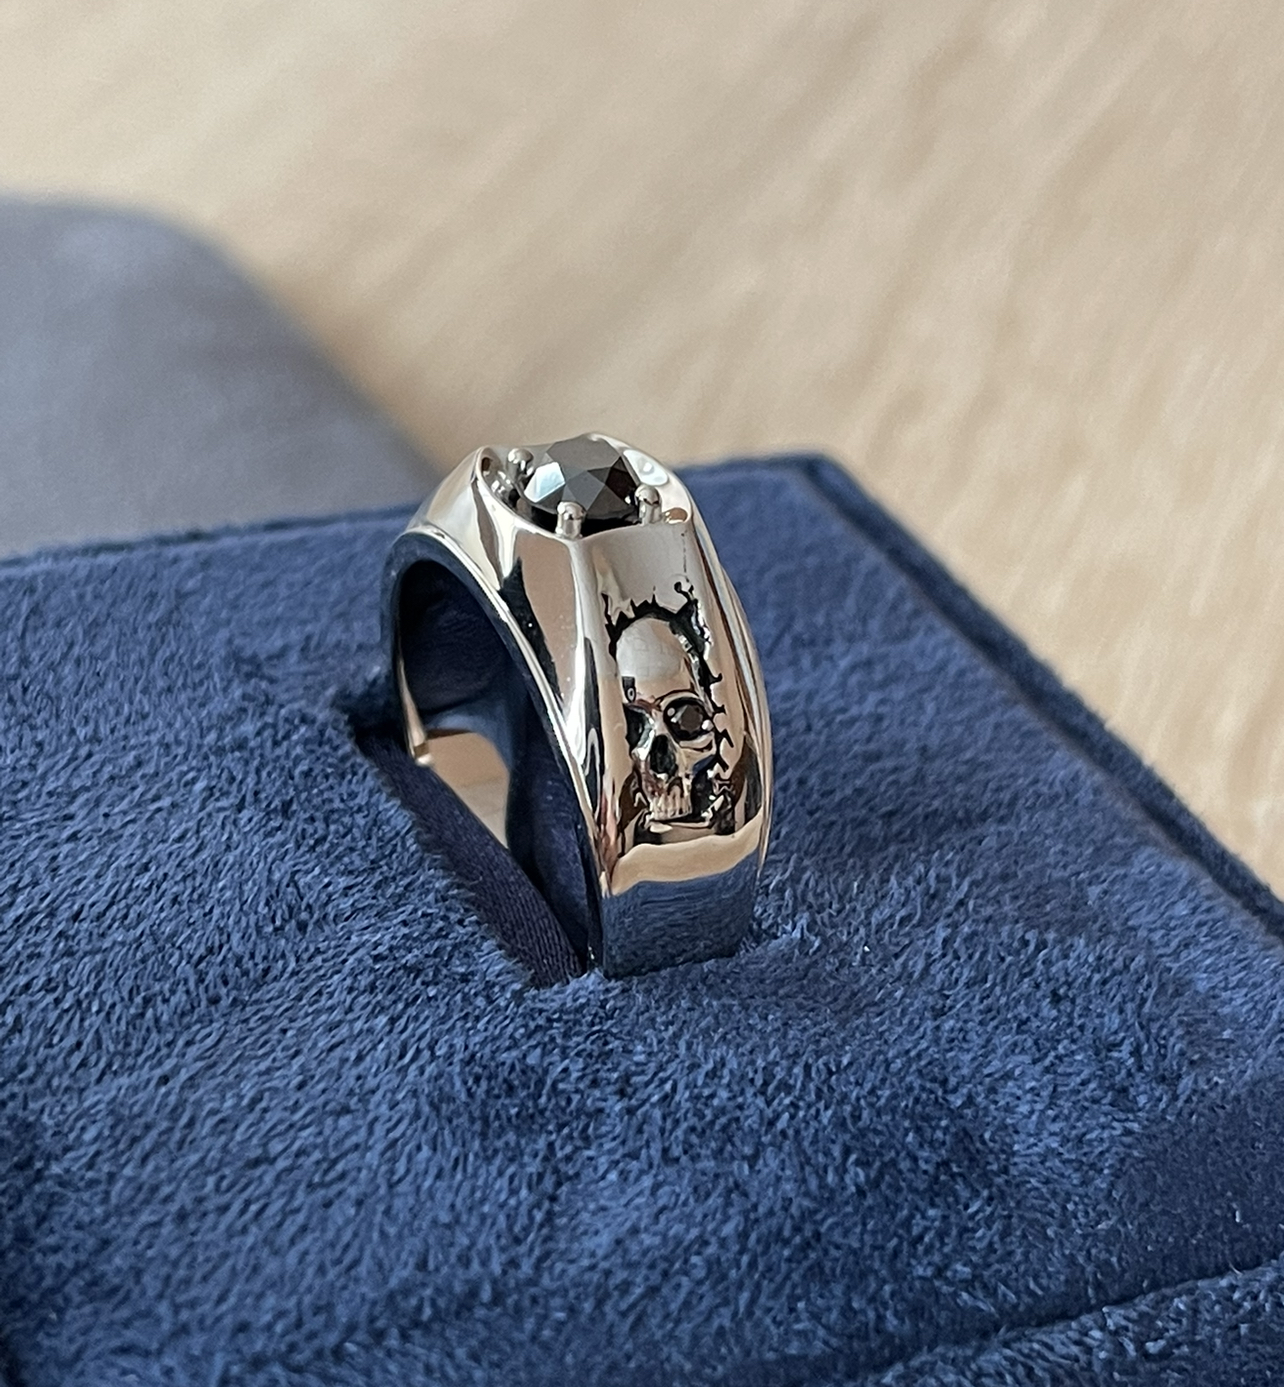 Мужское кольцо с чёрным бриллиантом(0,80 ct.) из серебра 925 пробы